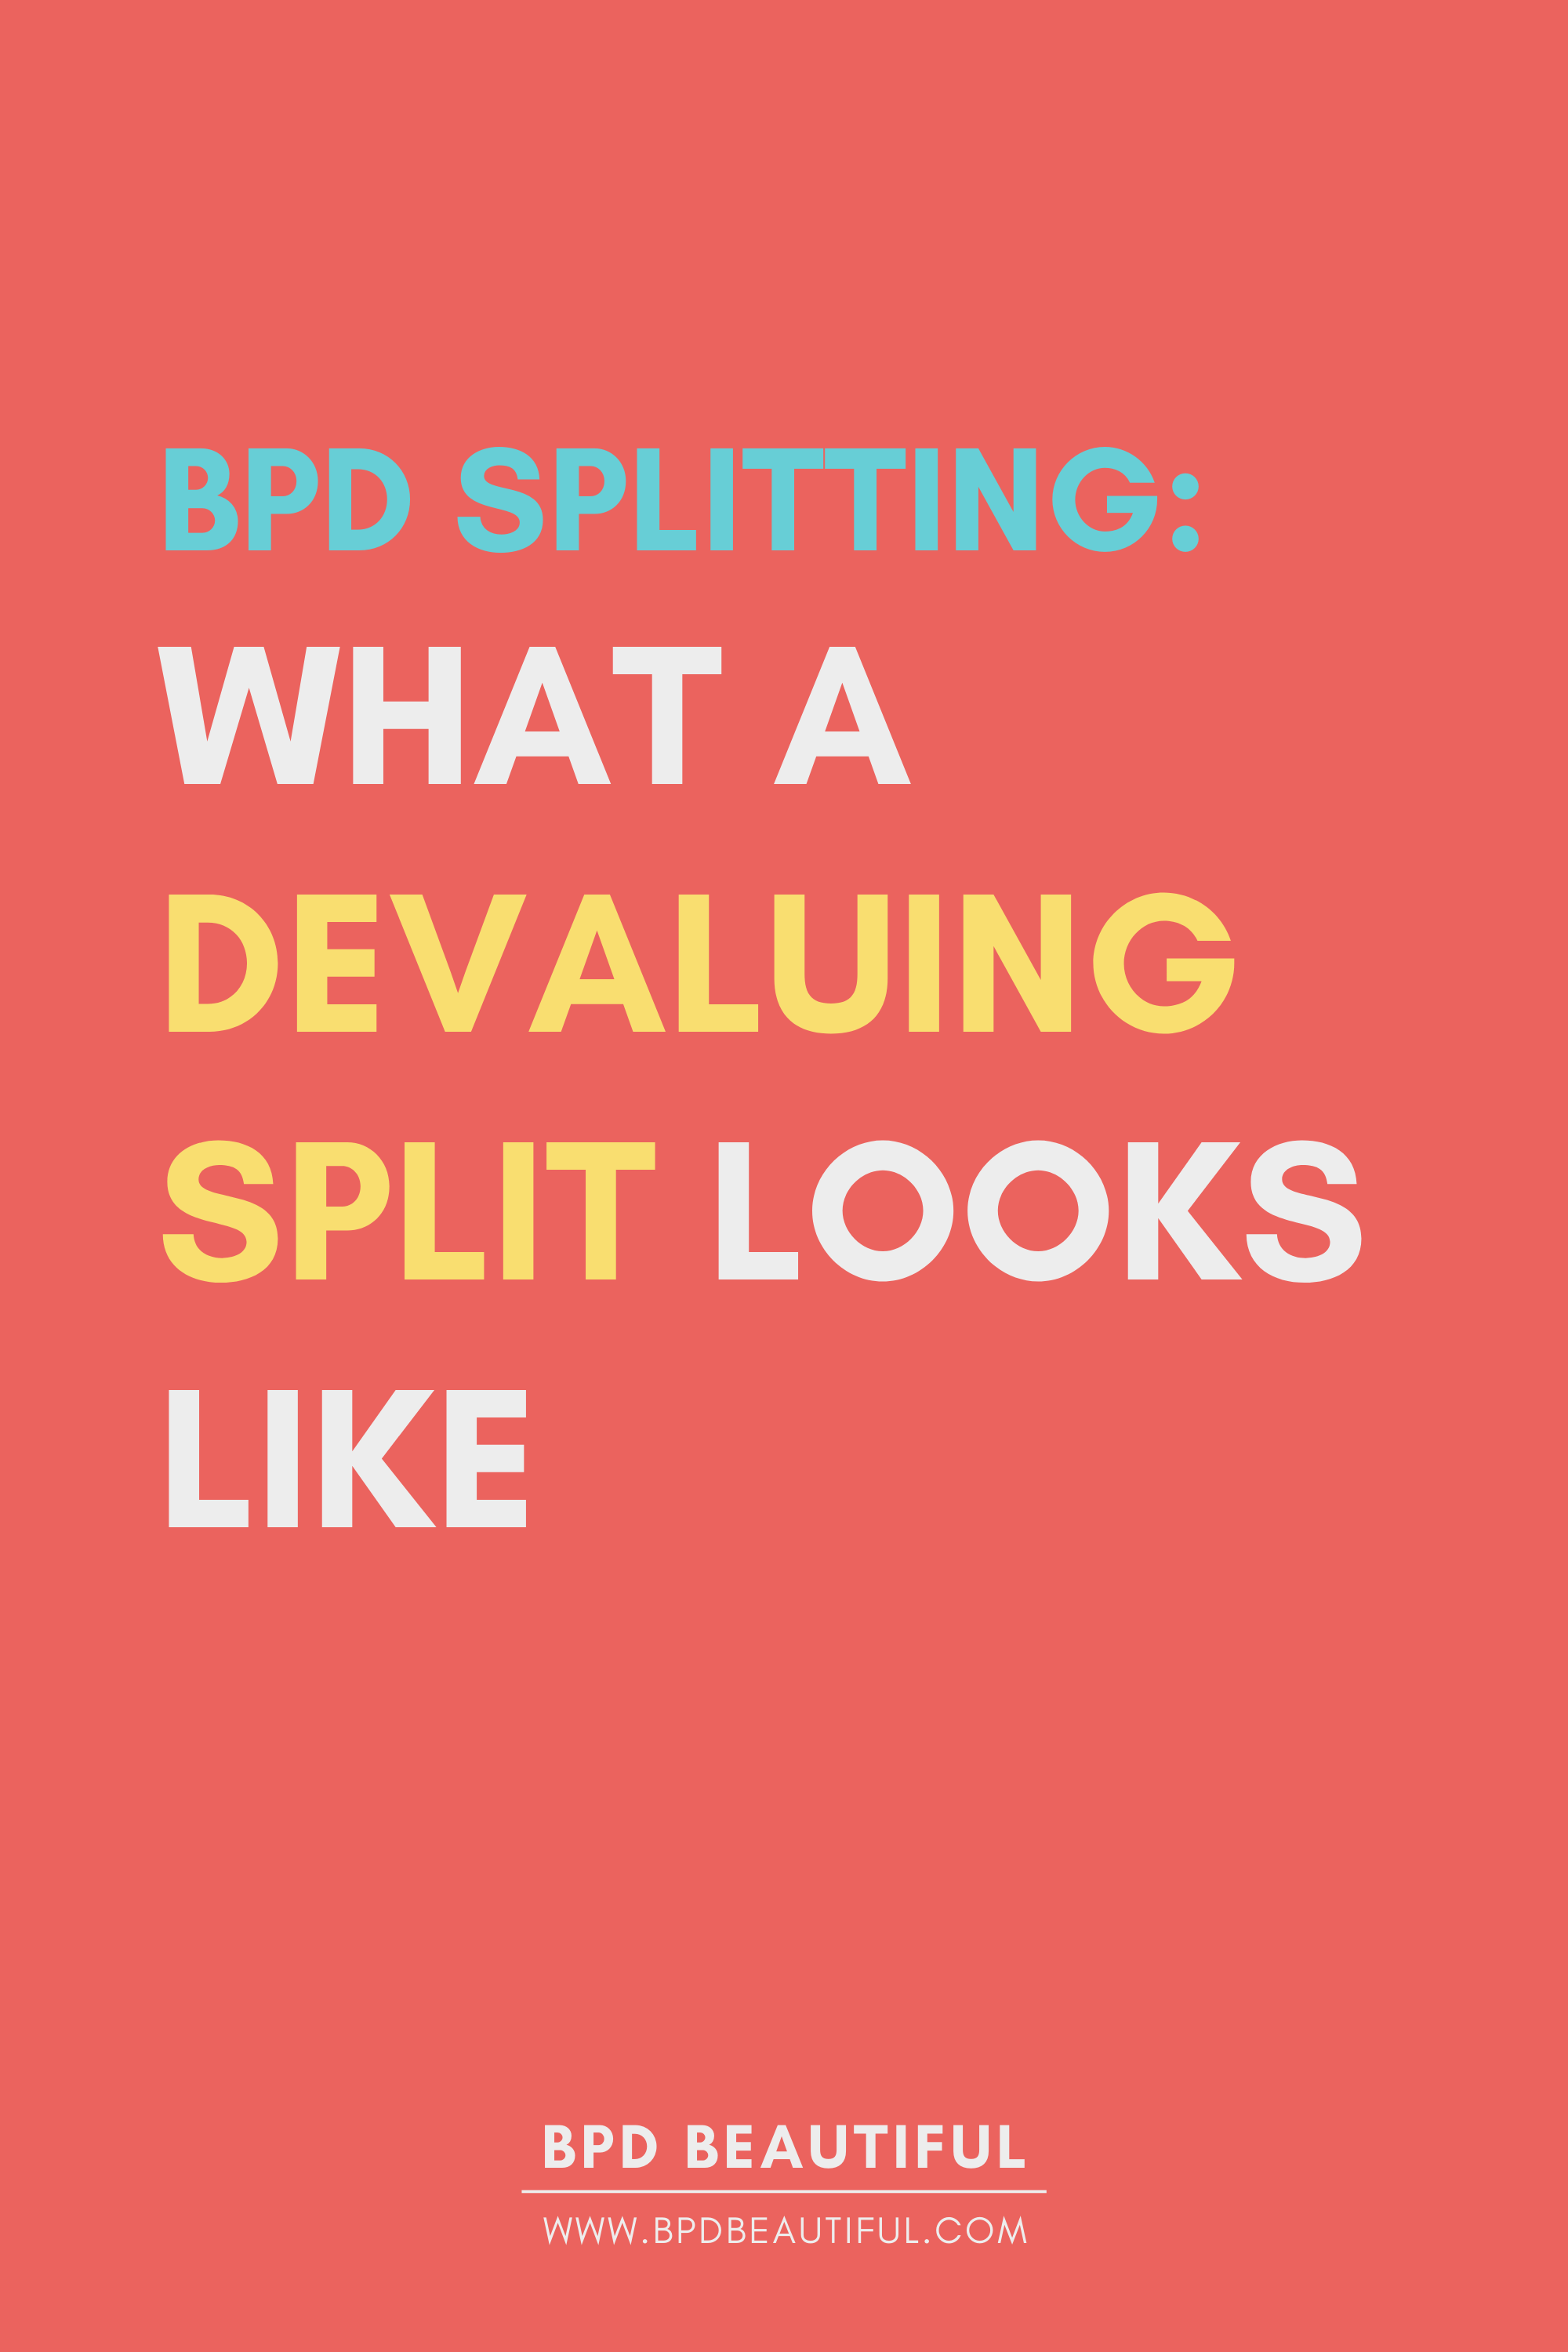 bpd splitting examples splitting black devaluing split